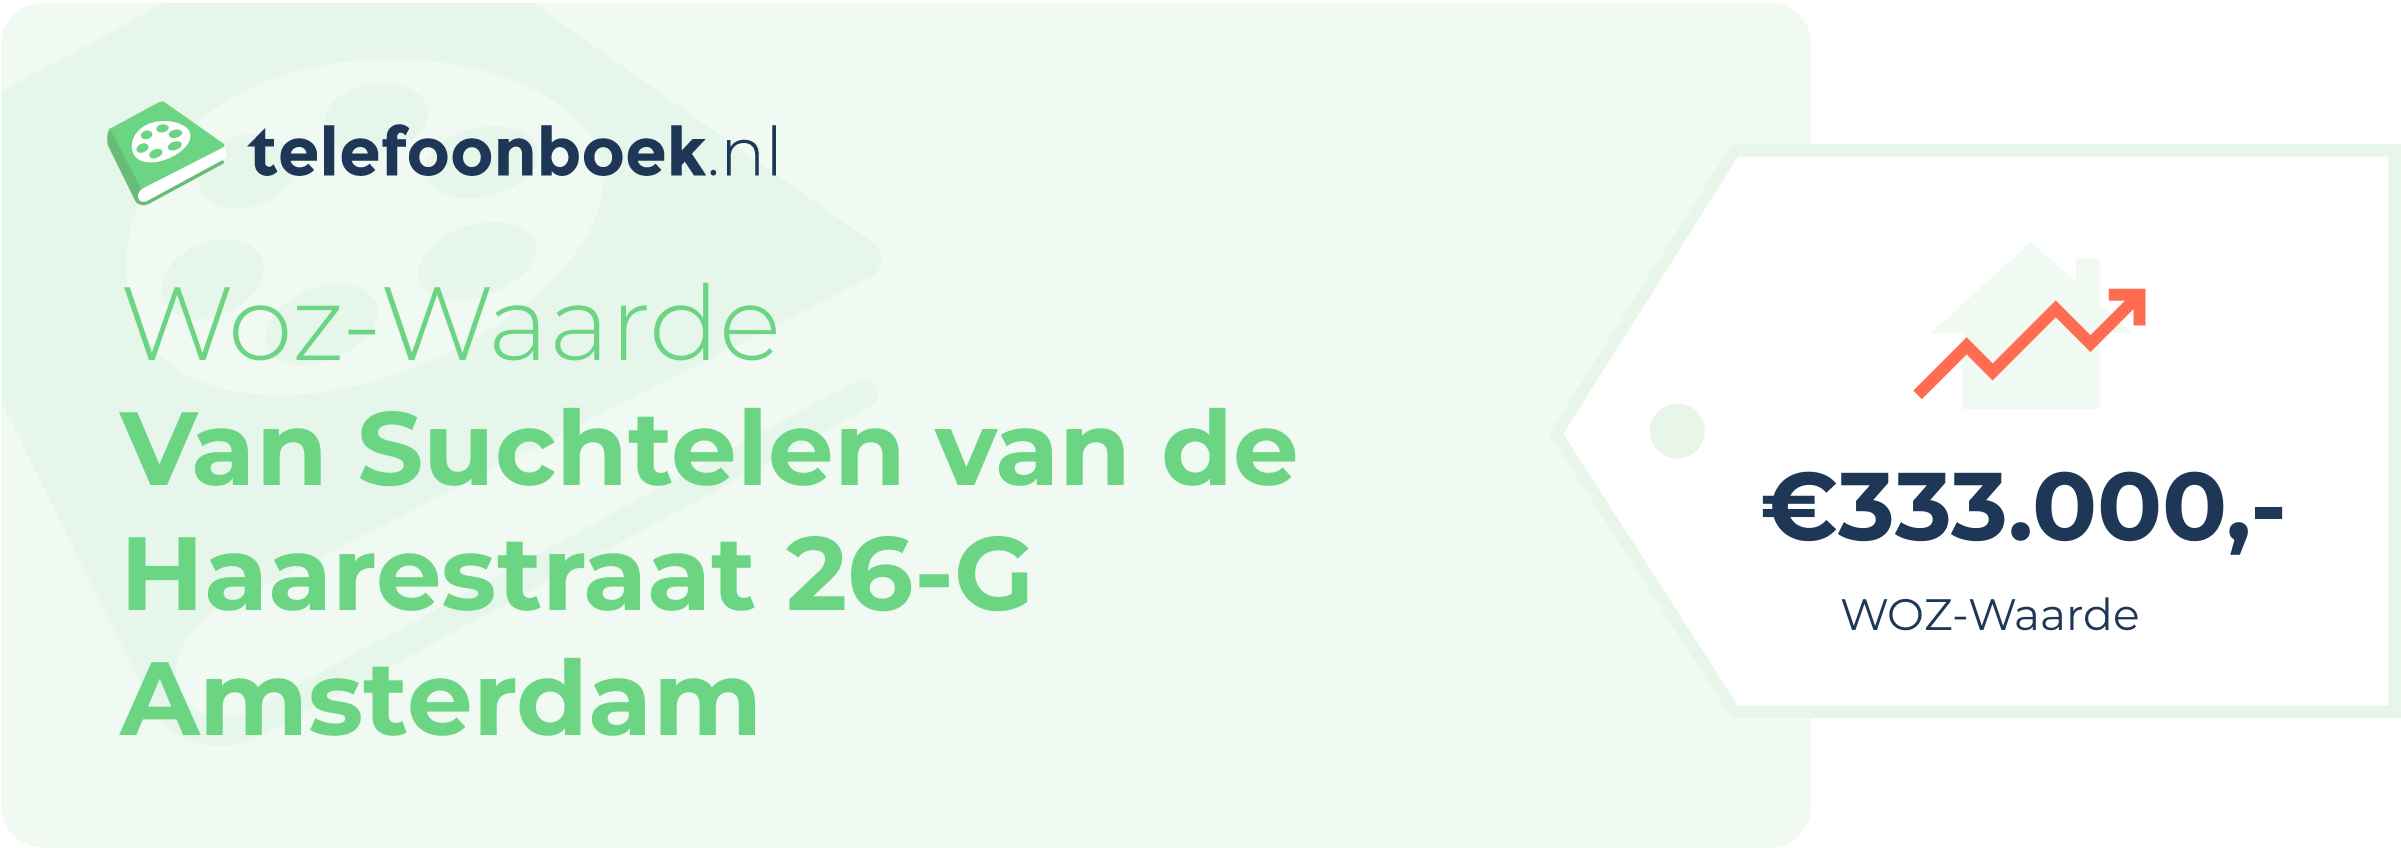 WOZ-waarde Van Suchtelen Van De Haarestraat 26-G Amsterdam